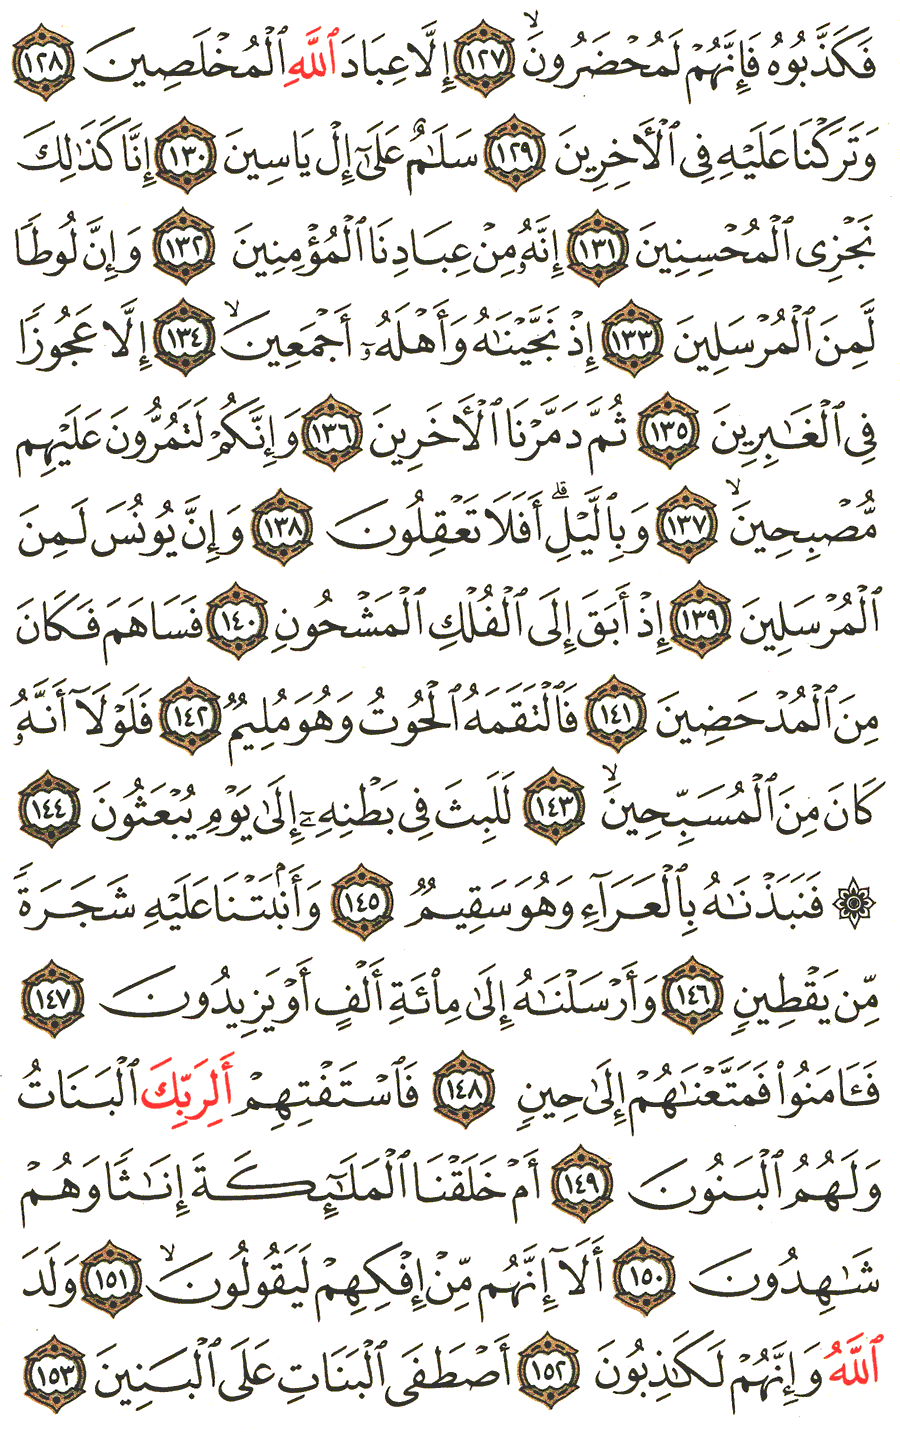 الصفحة 451 من القرآن الكريم